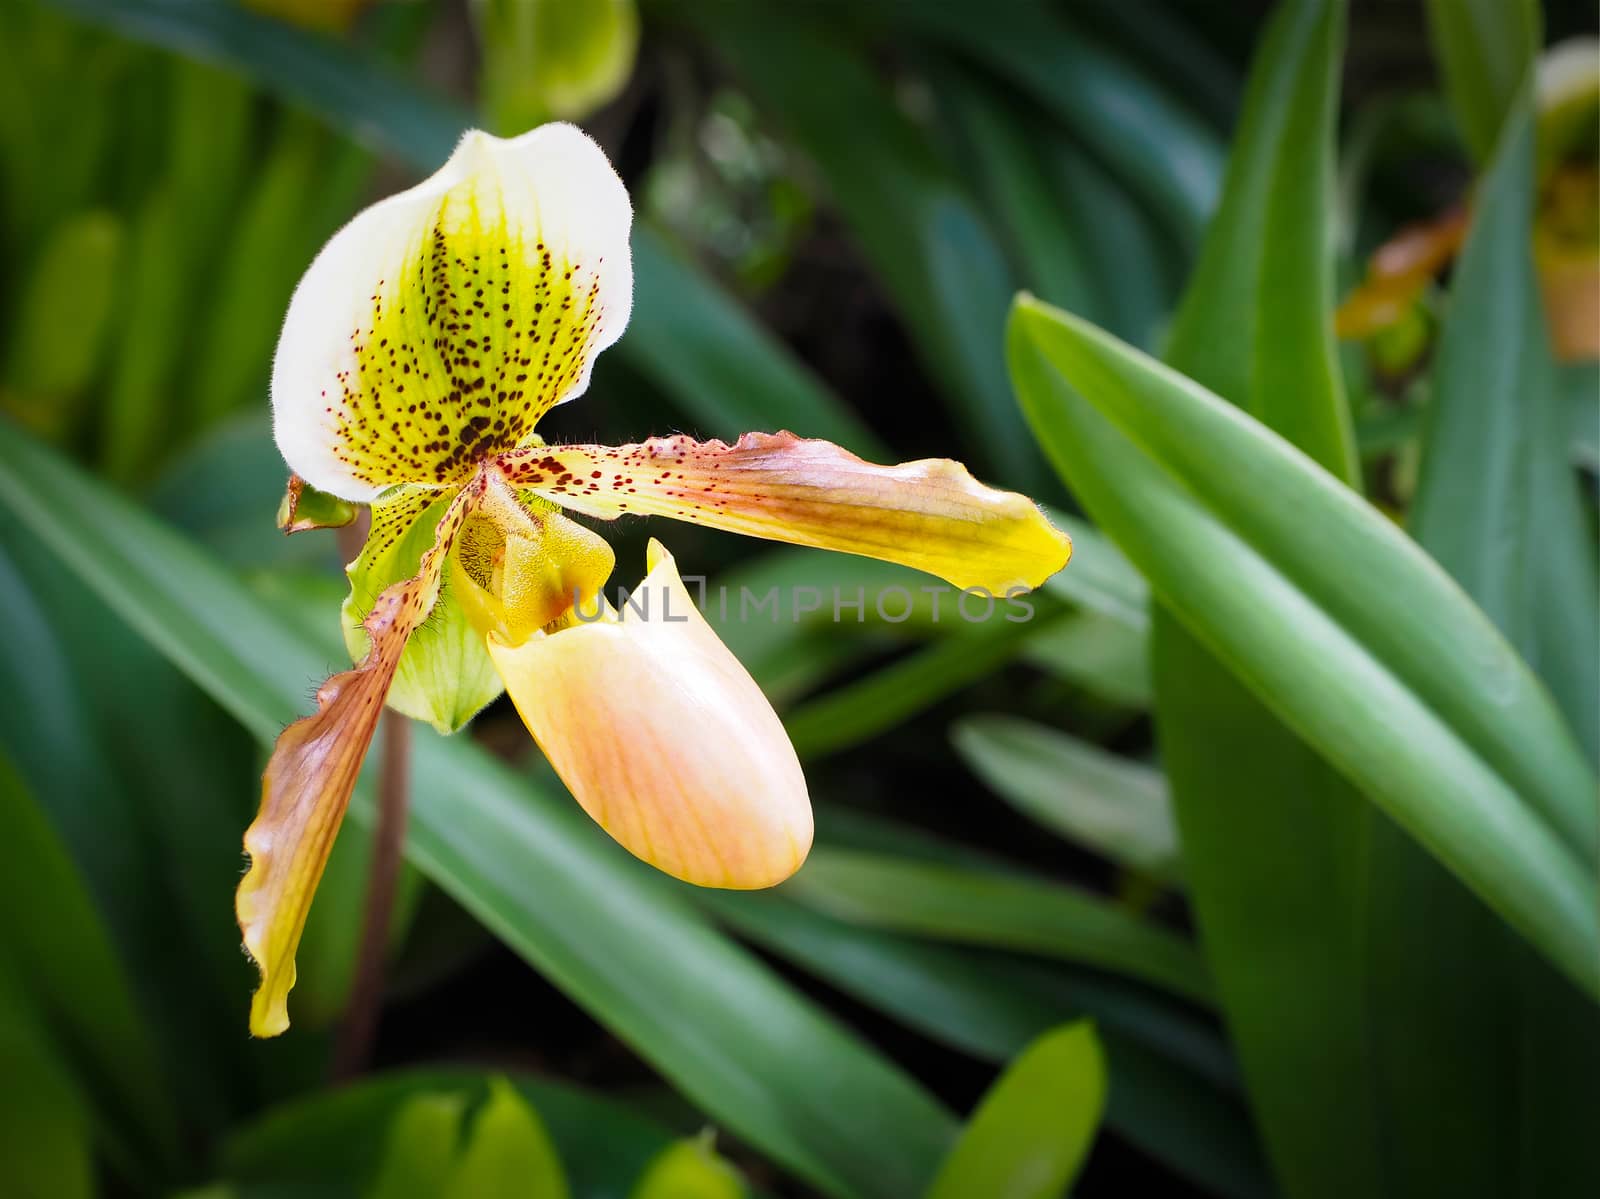 Rare Paphiopedilum orchid flower found in Thailand.